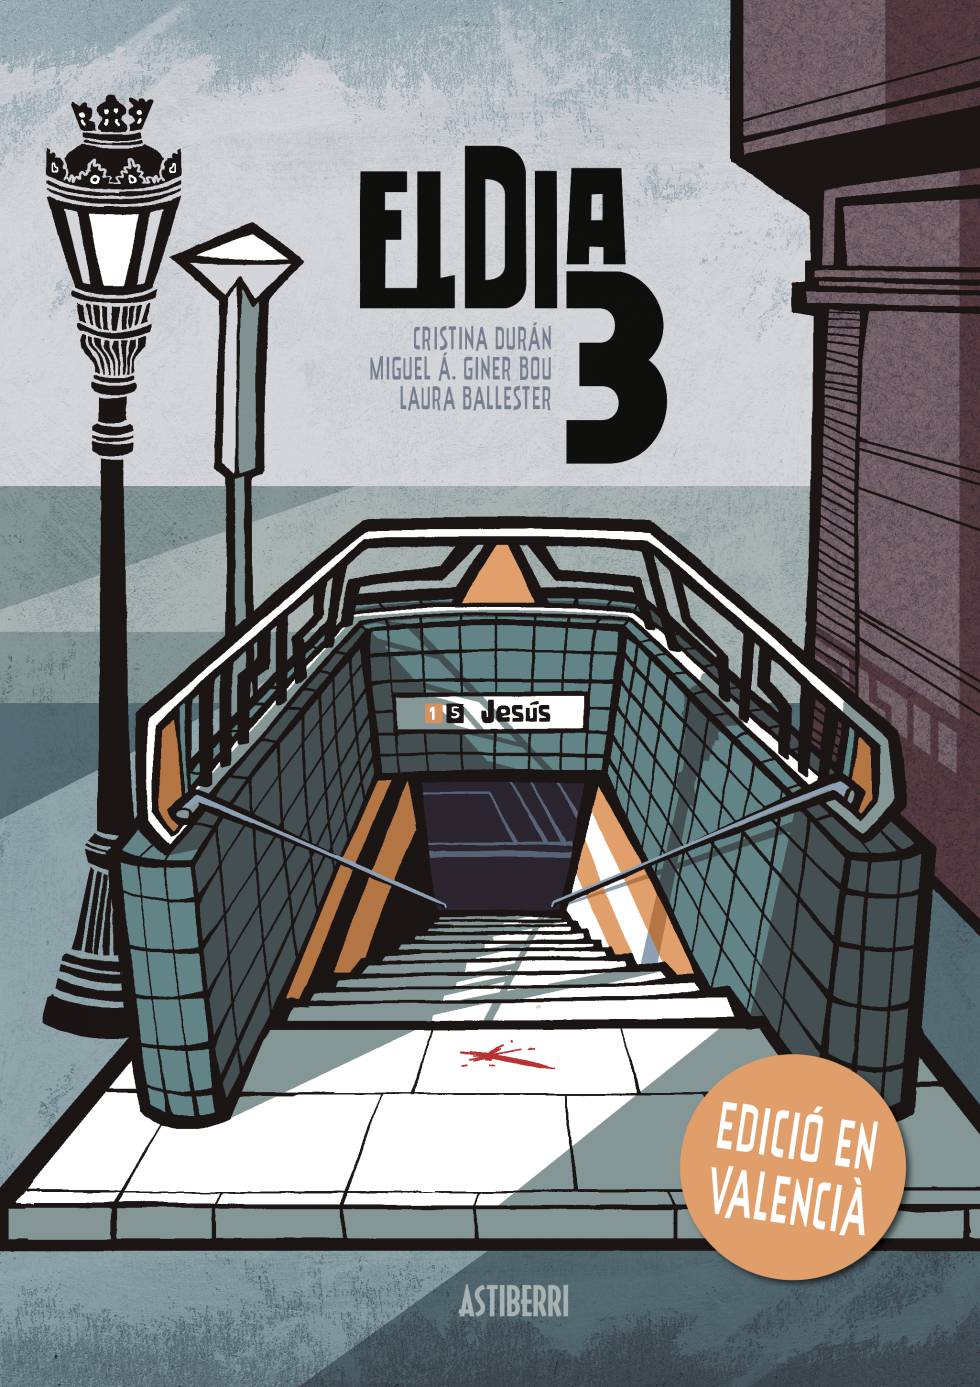 La portada de 'El día 3', el cómic sobre el accidente más grave de metro en España. 